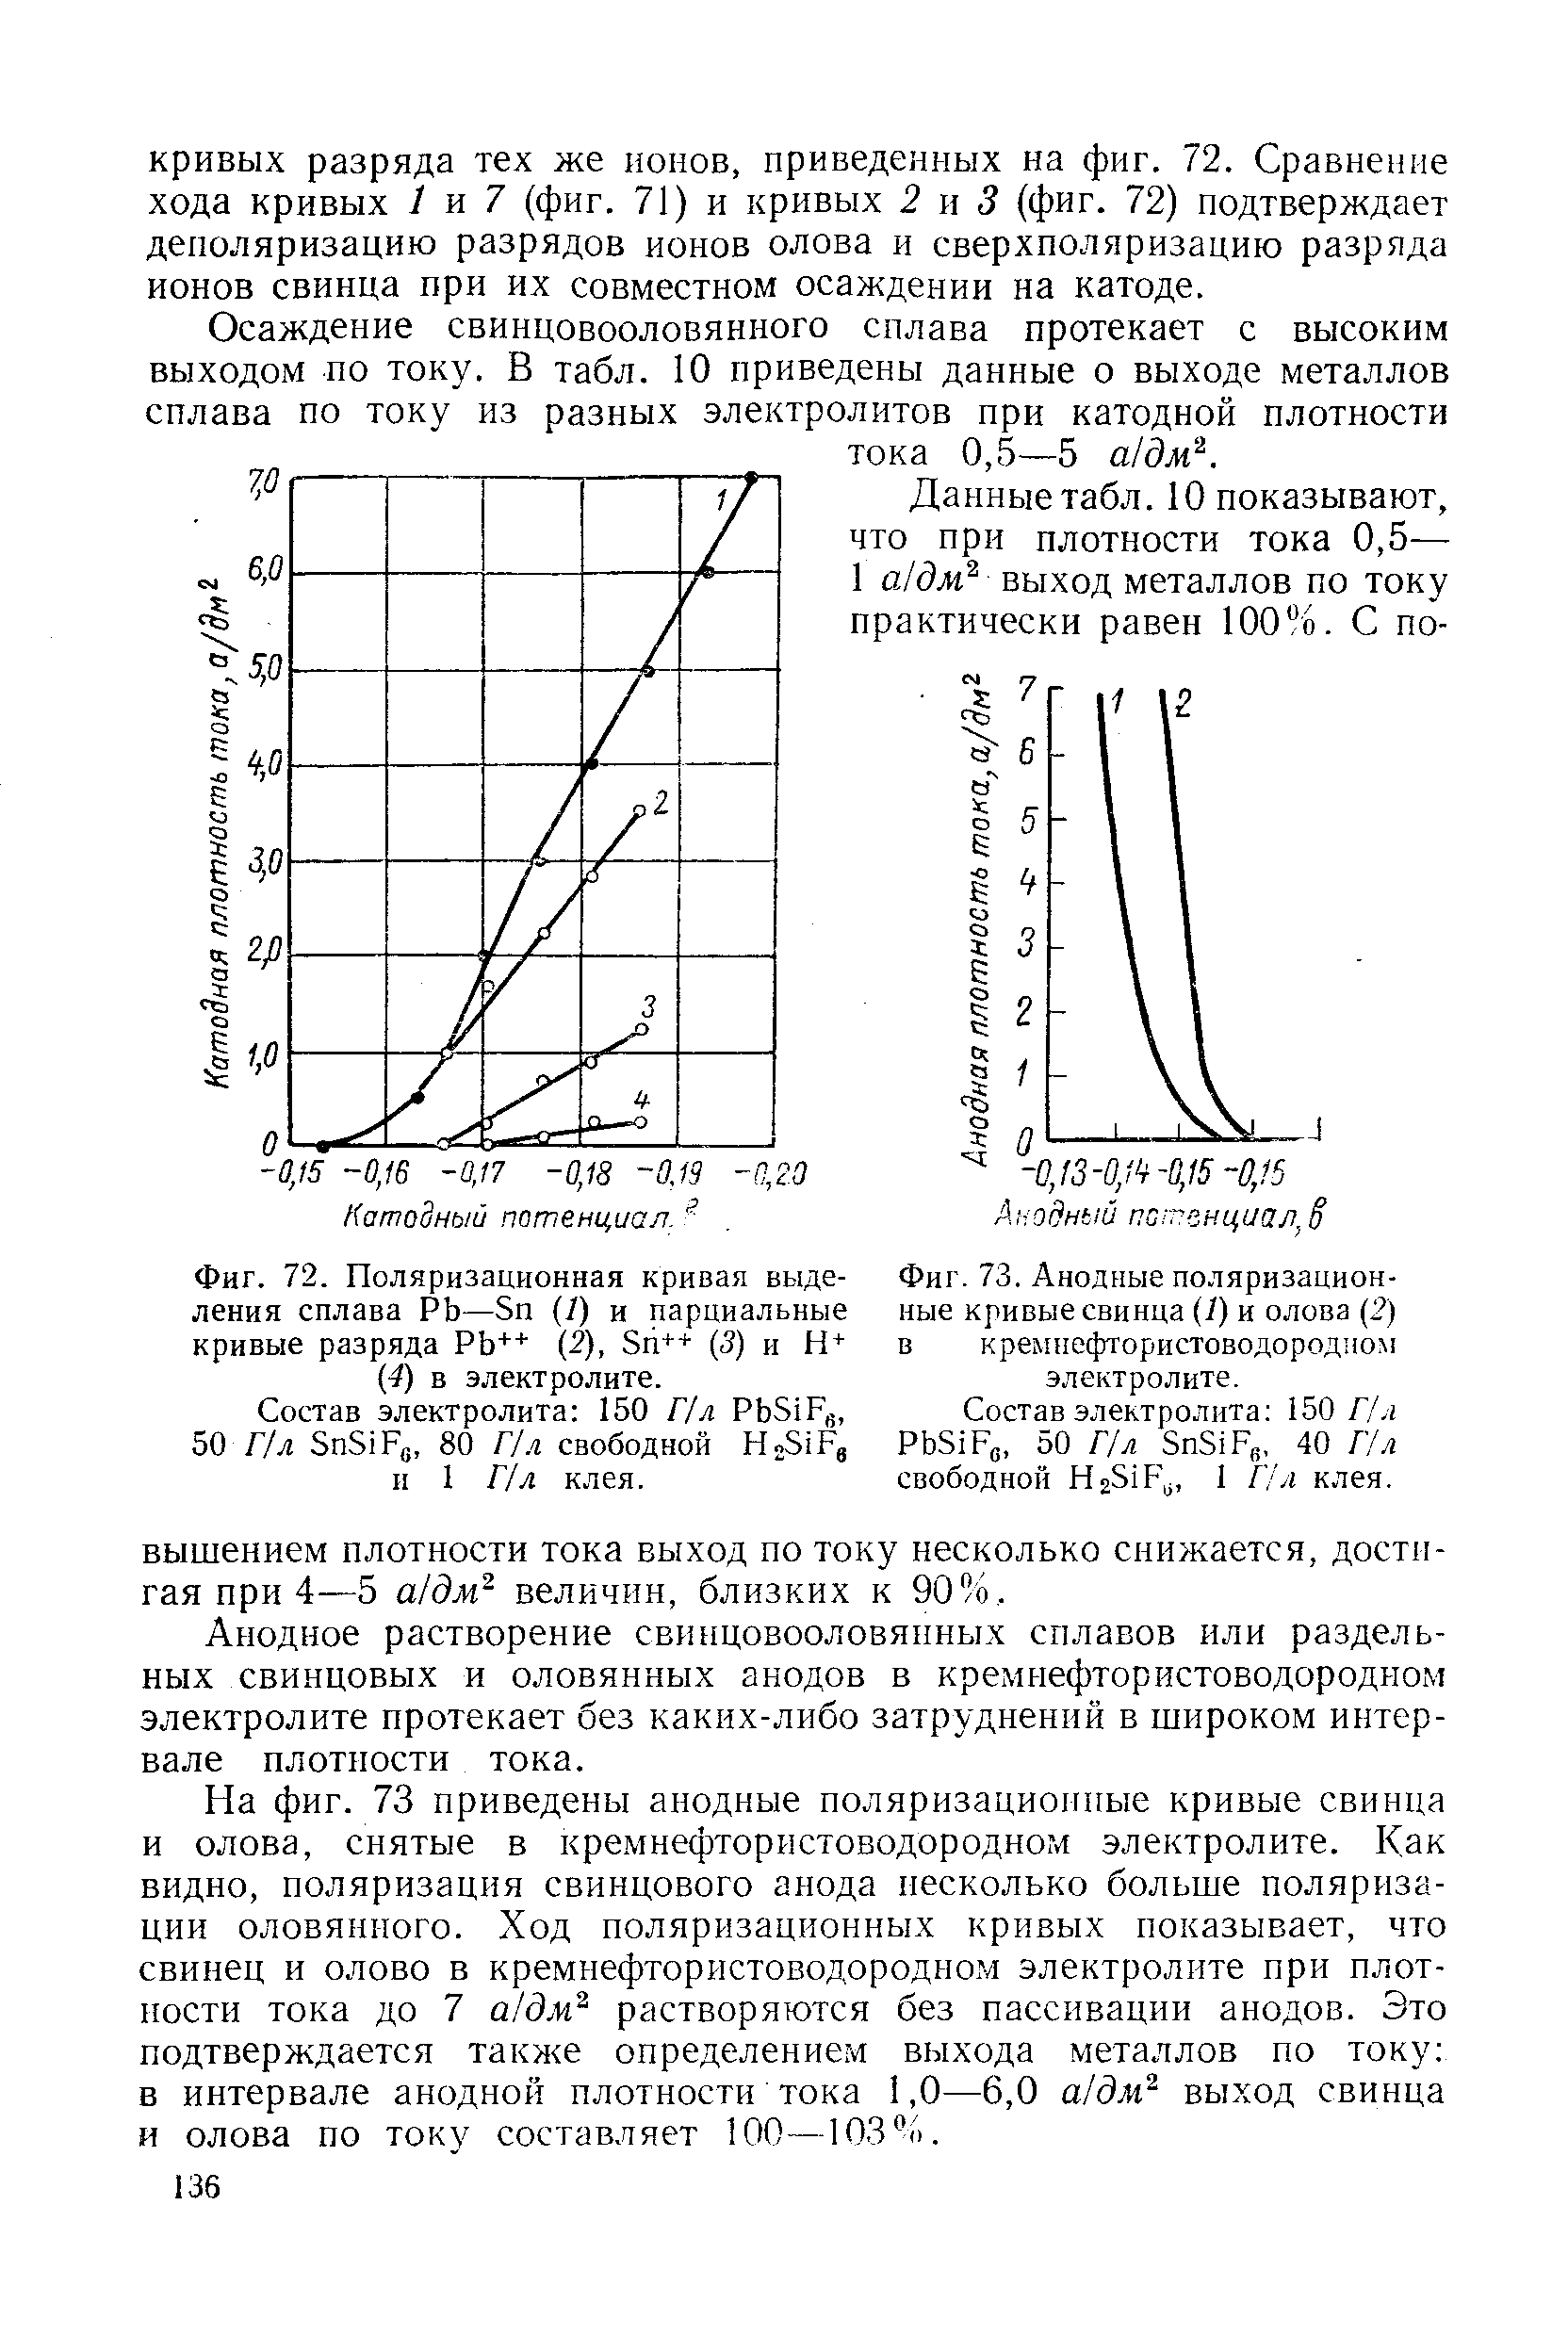 Фиг. 73. <a href="/info/534329">Анодные поляризационные кривые</a> свинца (/) и олова (2) в кремнефтористоводородцом электролите.
